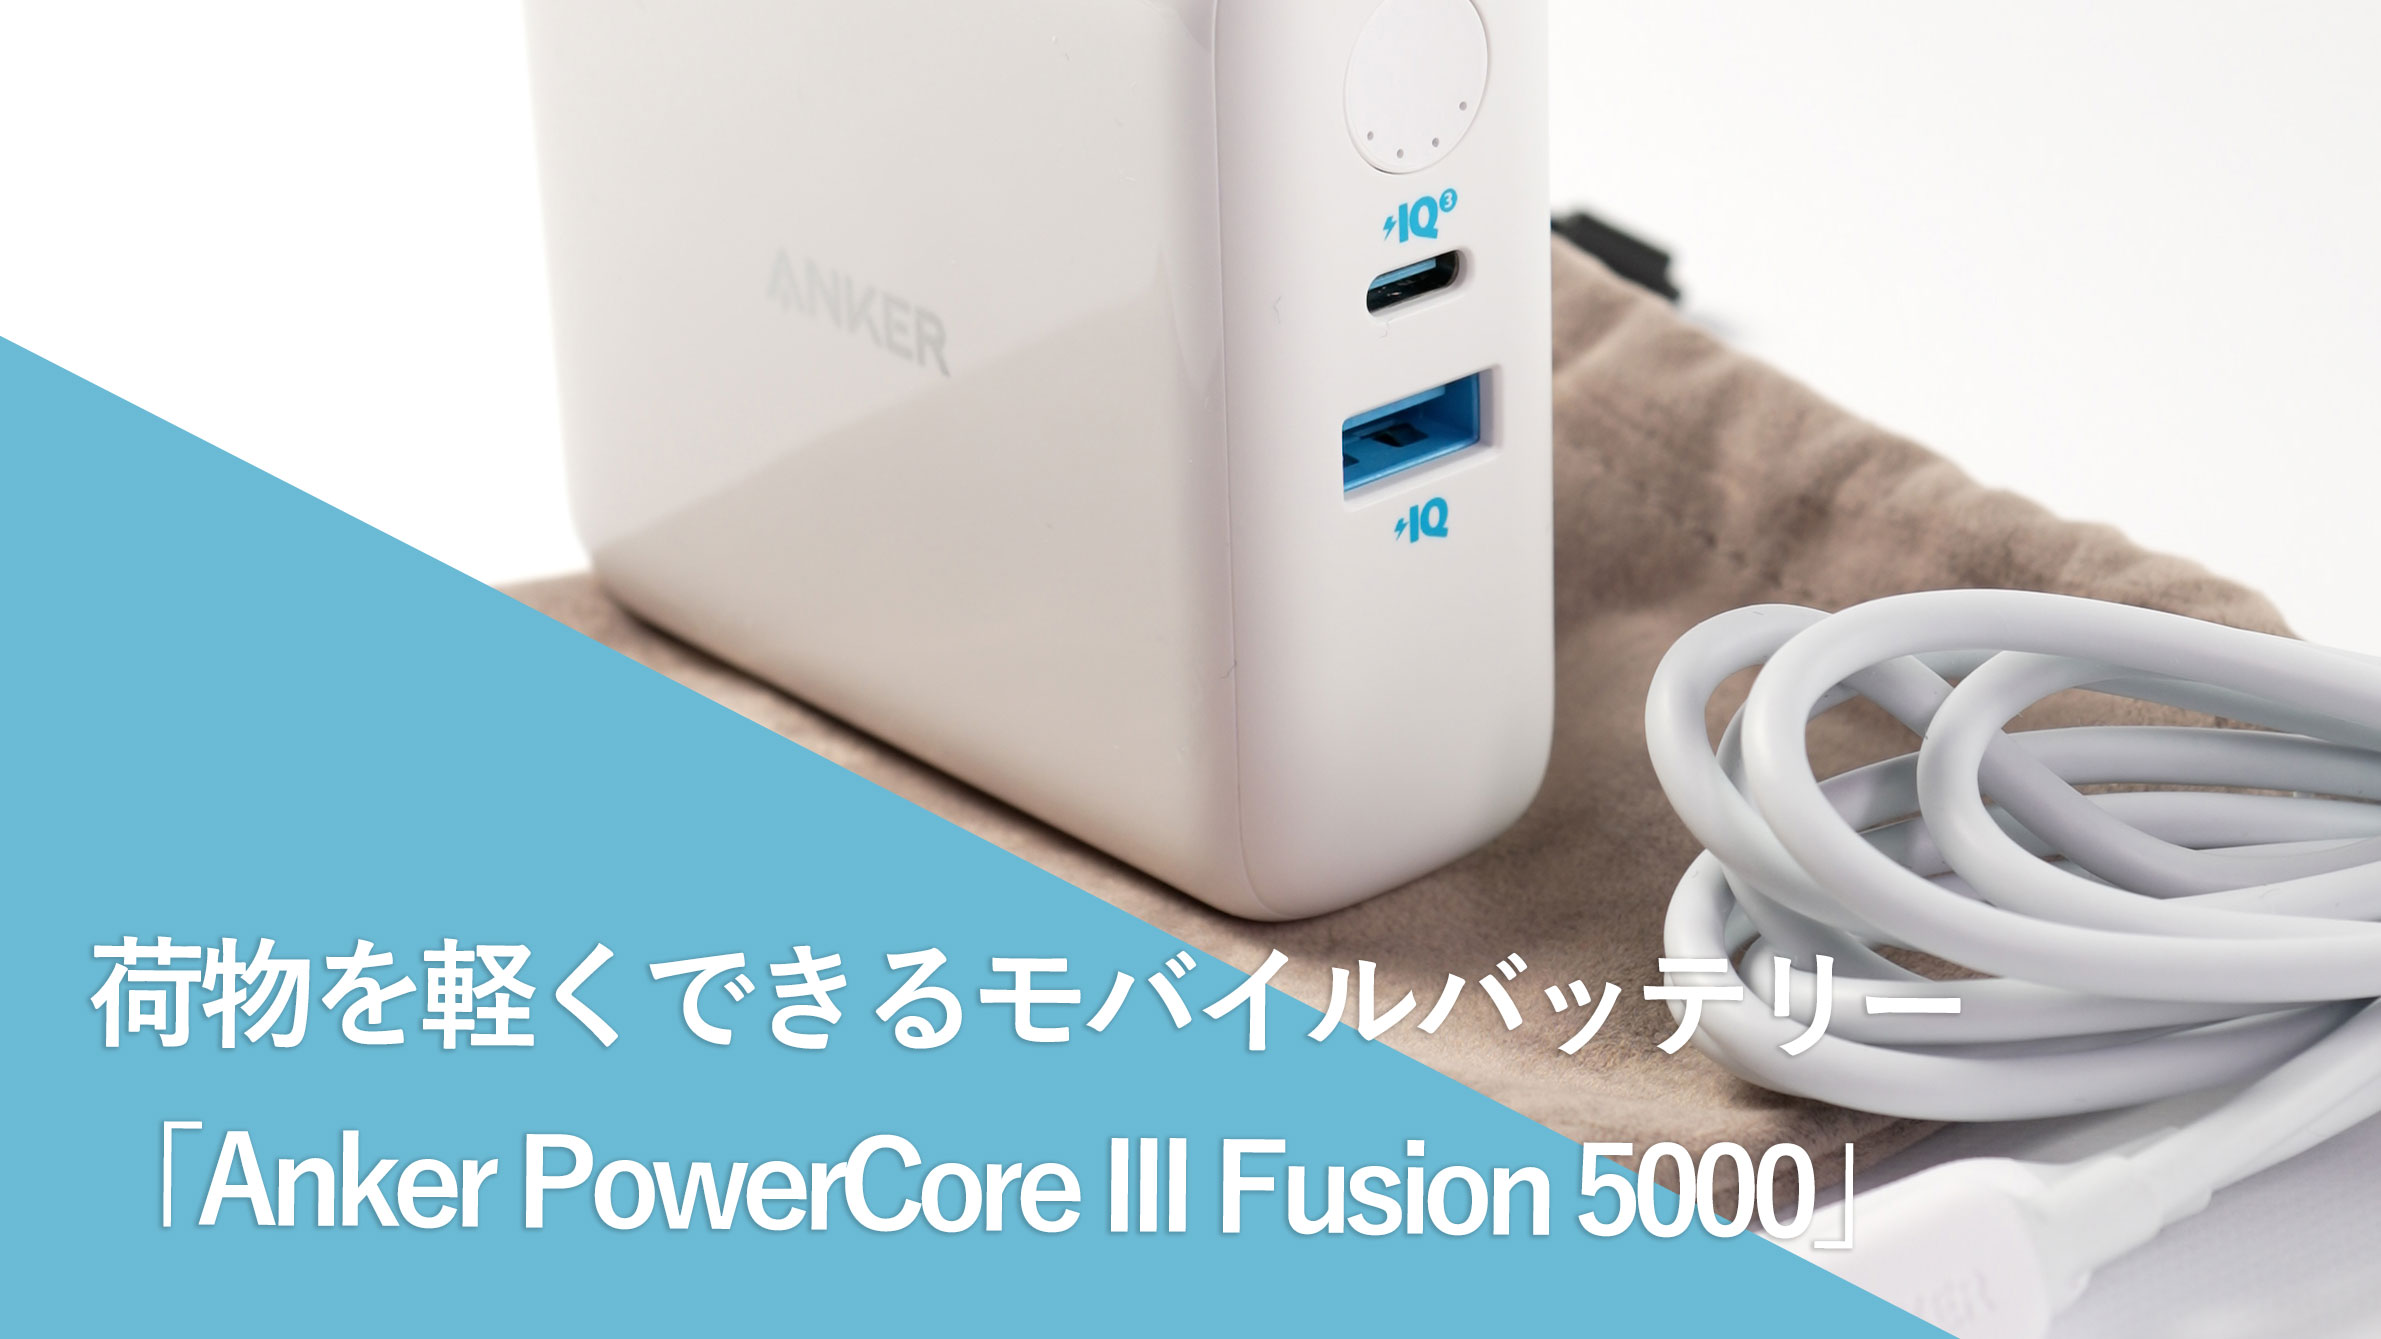 荷物を軽くできるモバイルバッテリー「Anker PowerCore III Fusion 5000」